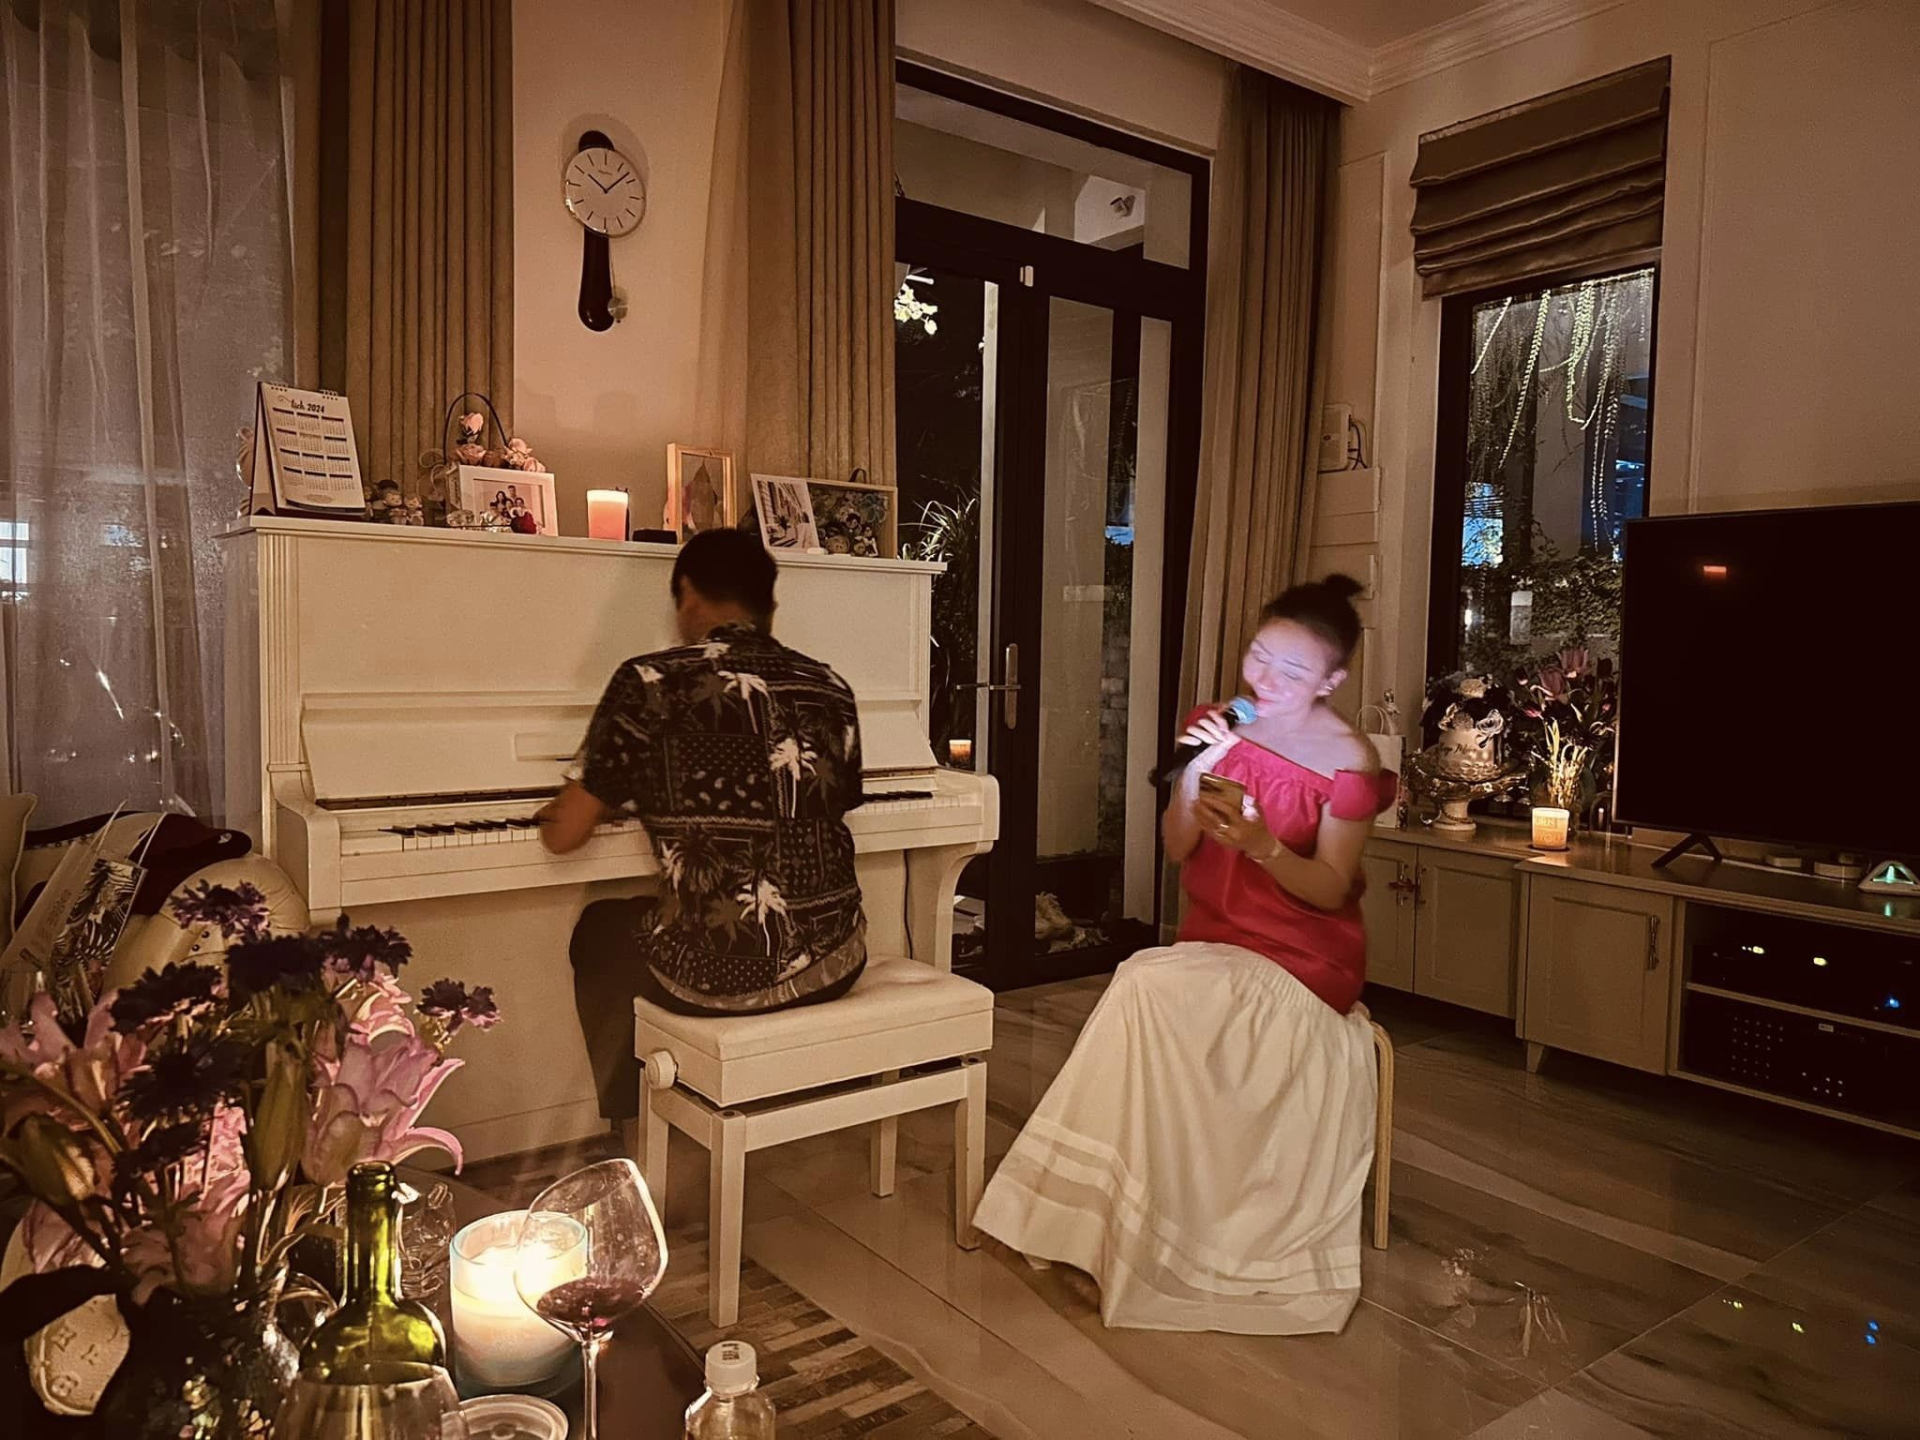 Nhạc sĩ Hồ Hoài Anh hiếm hoi lộ diện sau nghỉ việc, ngồi đàn cho một nữ ca sĩ hát trong không gian lãng mạn - ảnh 1